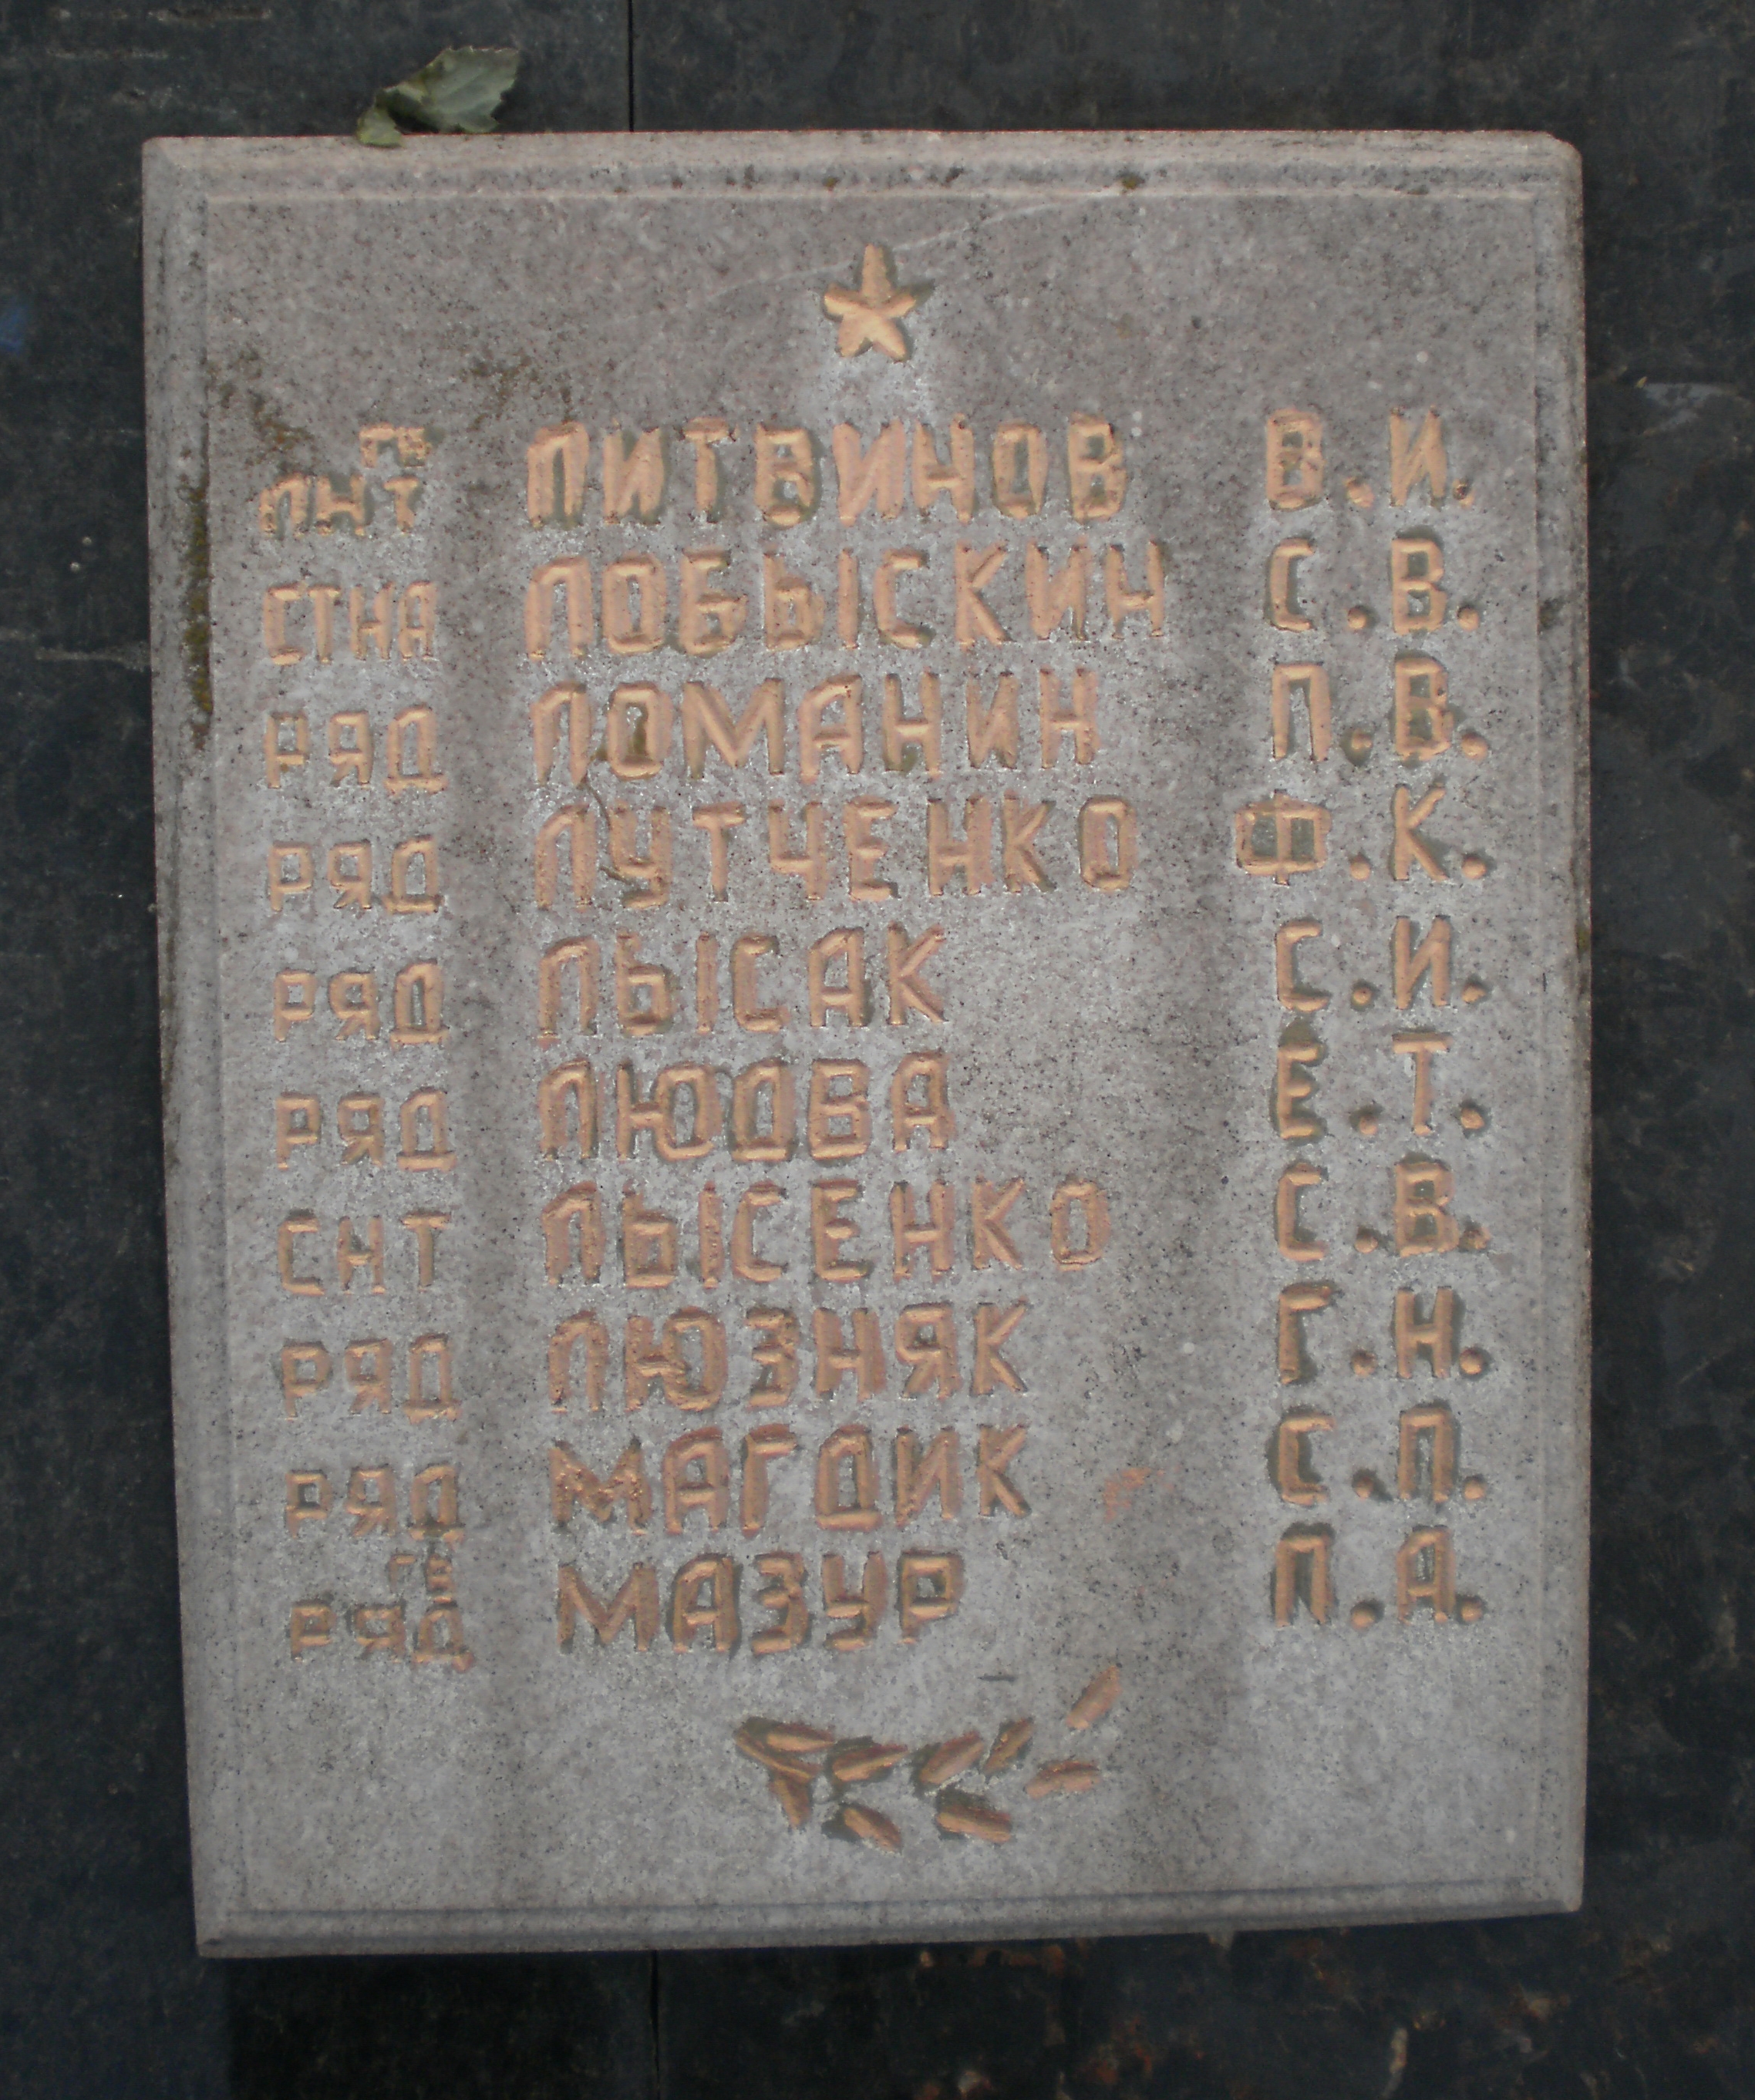 Братская могила в пгт Отыния Коломыйского района